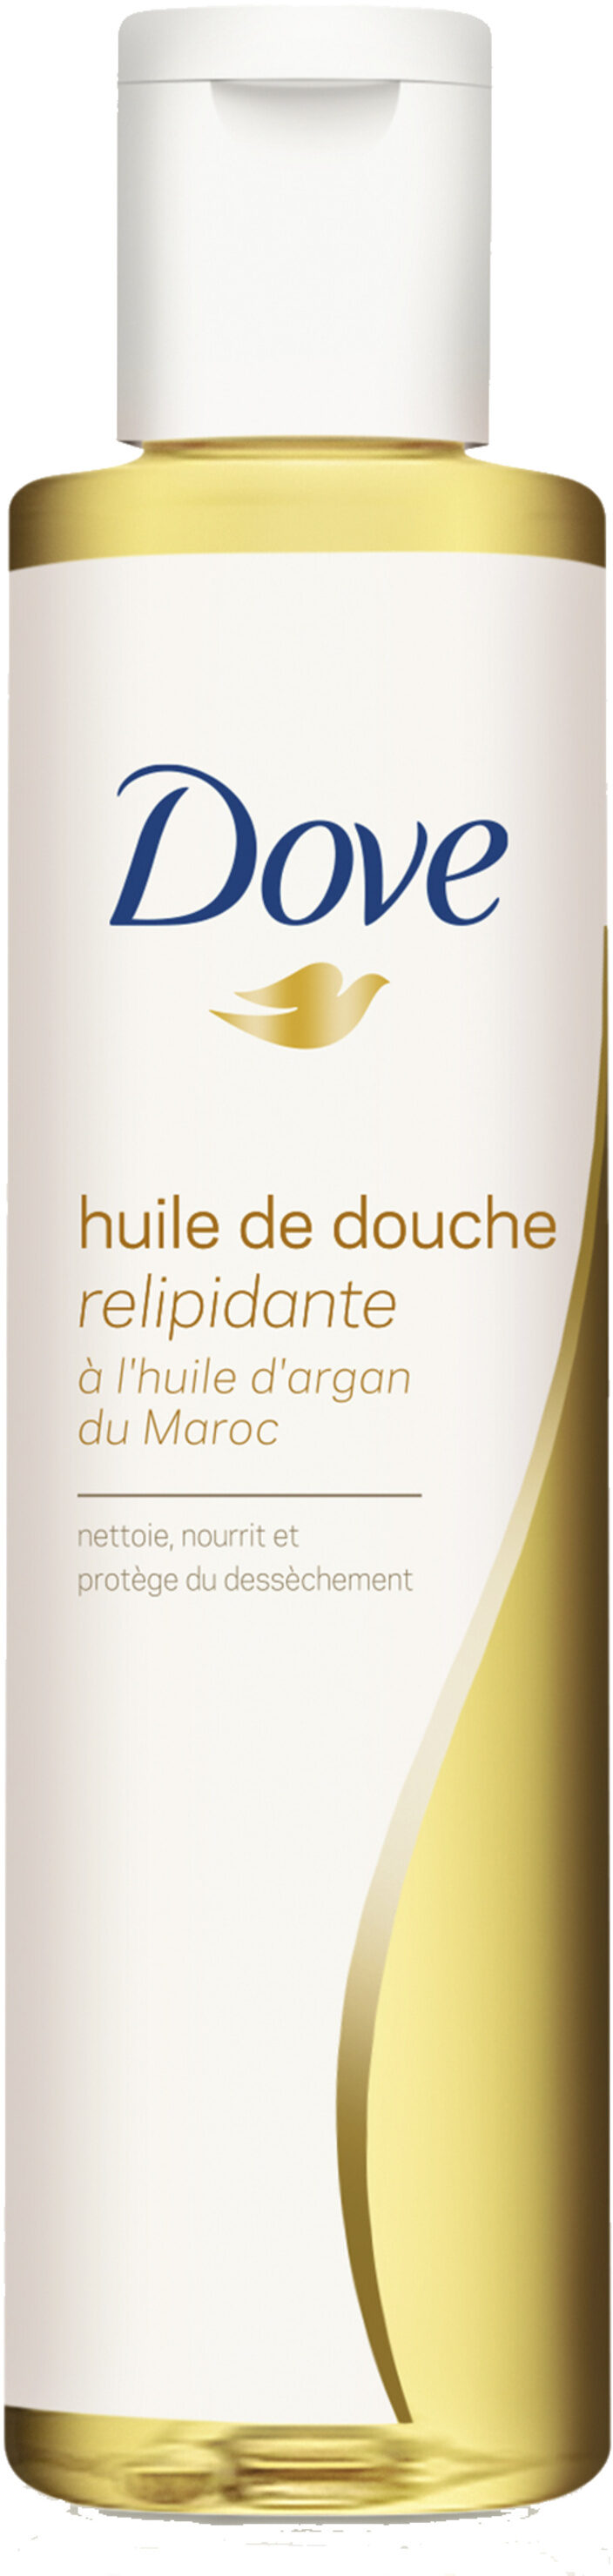 Dove Huile de Douche Relipidante Huile d'Argan du Maroc - Produit - fr